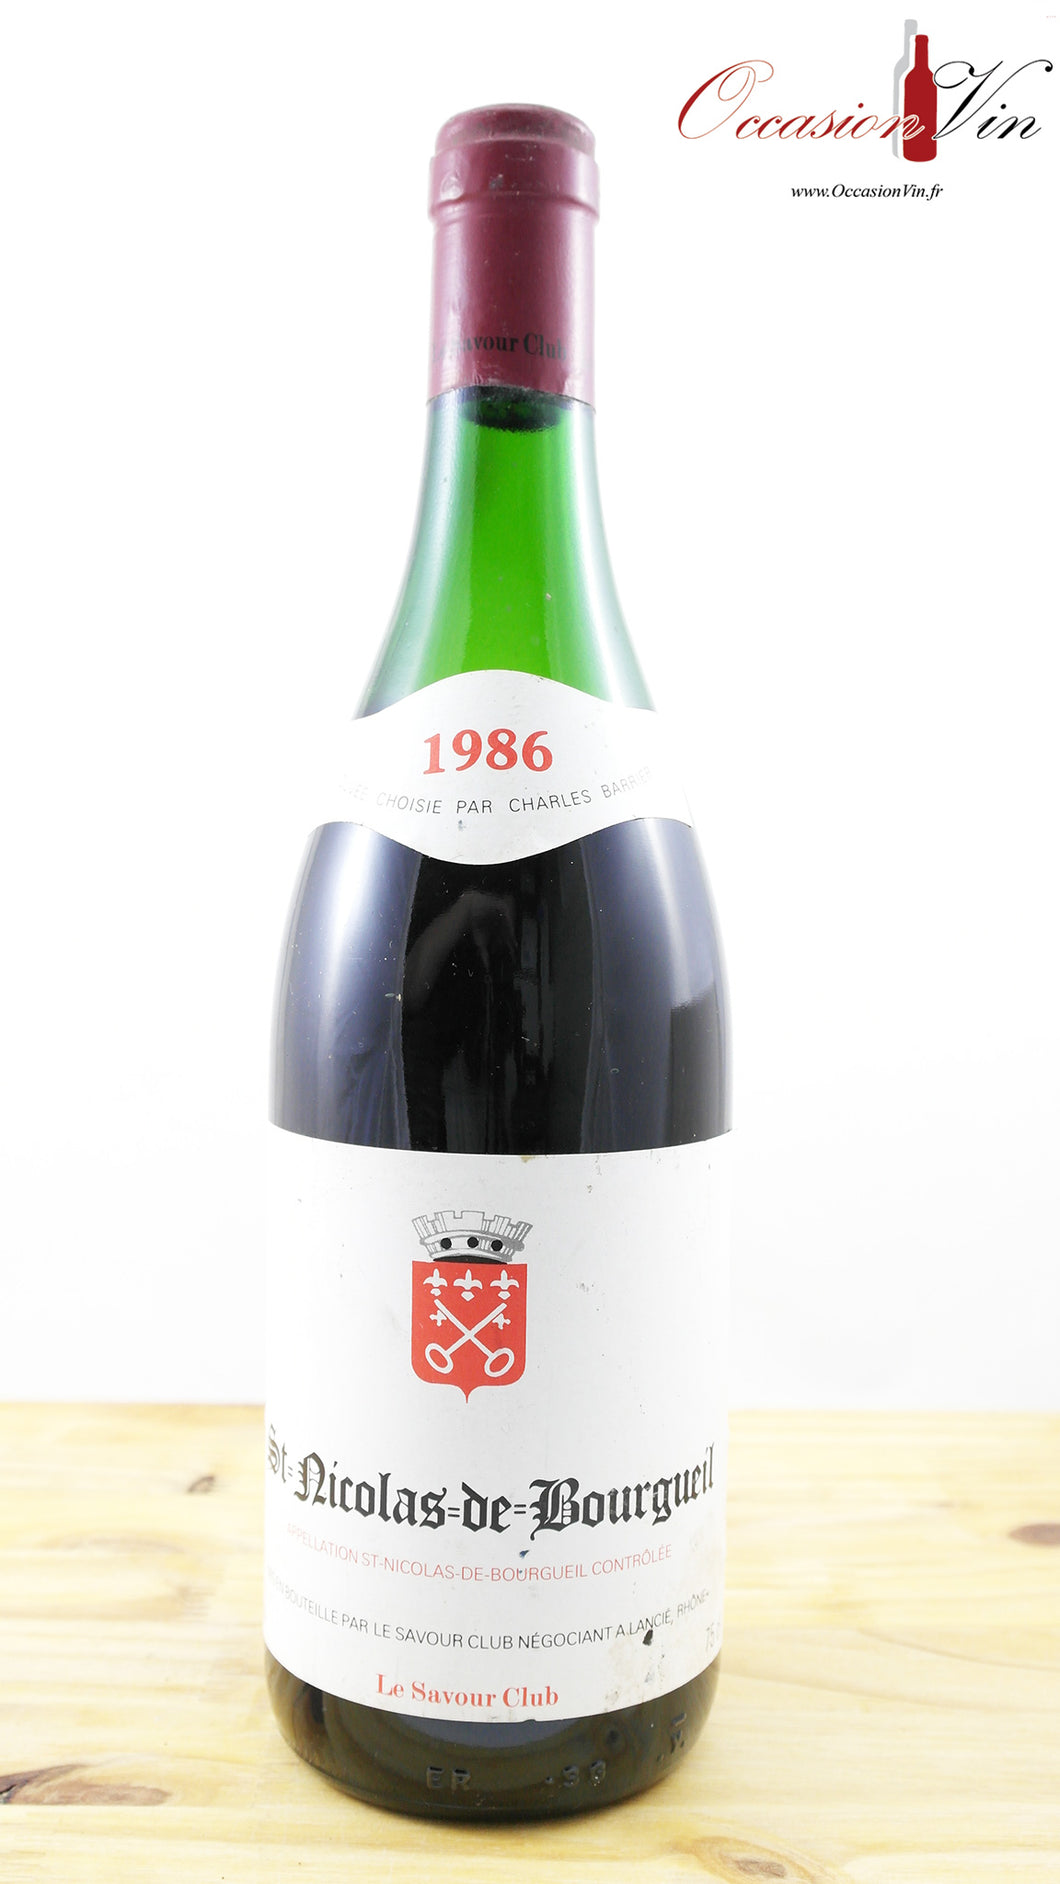 St-Nicolas-de-Bourgueil Le Savour Club NB Vin 1986